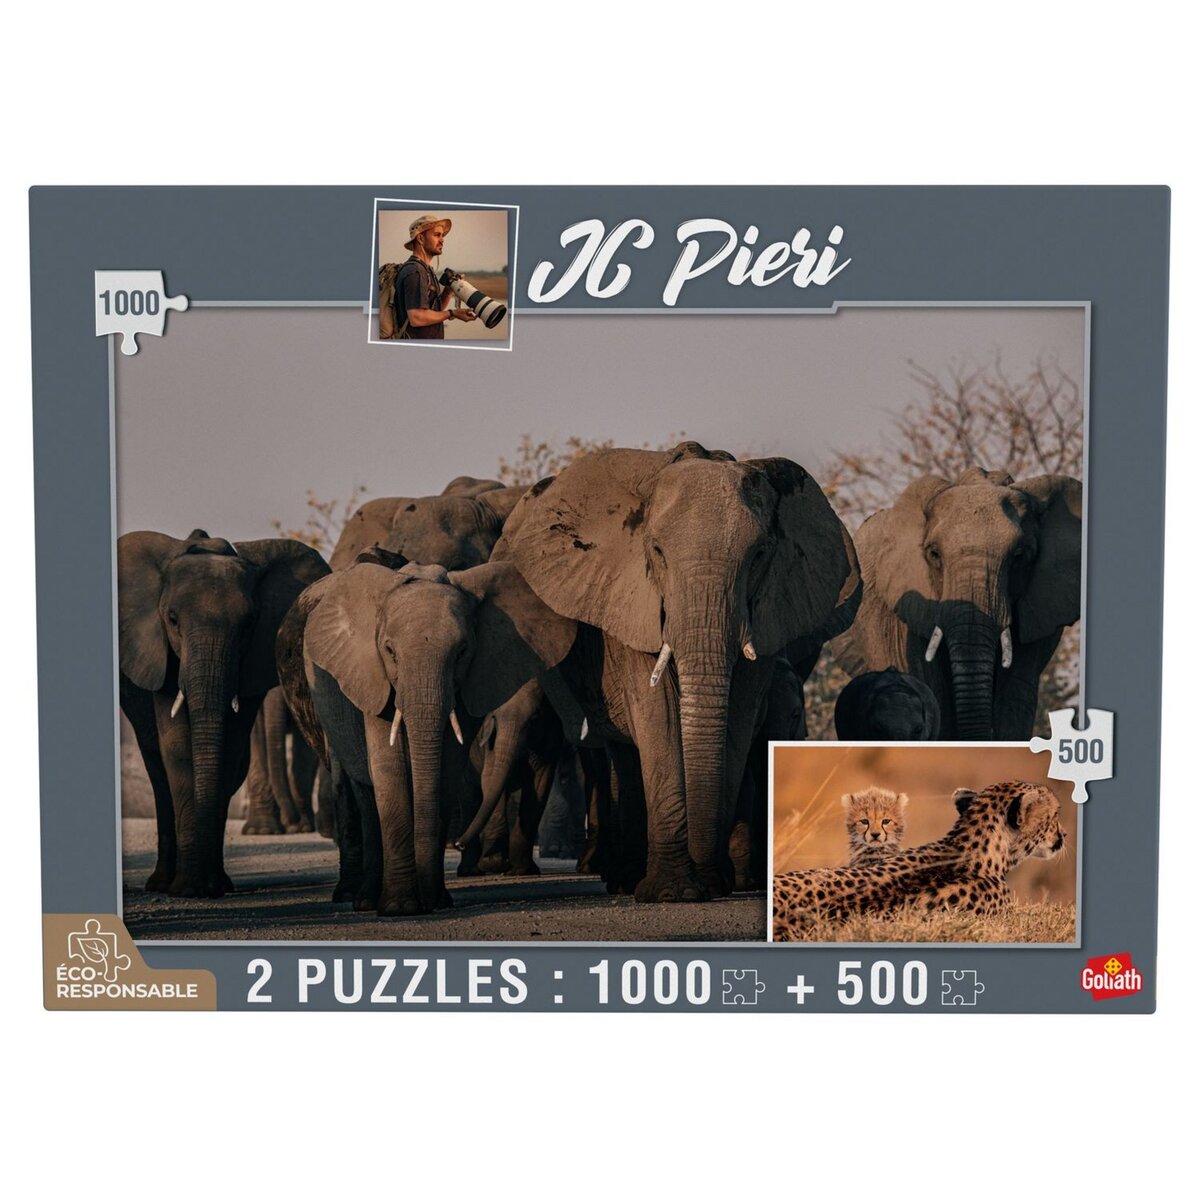 GOLIATH Puzzles 1000 et 500 pièces - JC Pieri Eléphants (Namibie) et Guépardeau (Zambie)